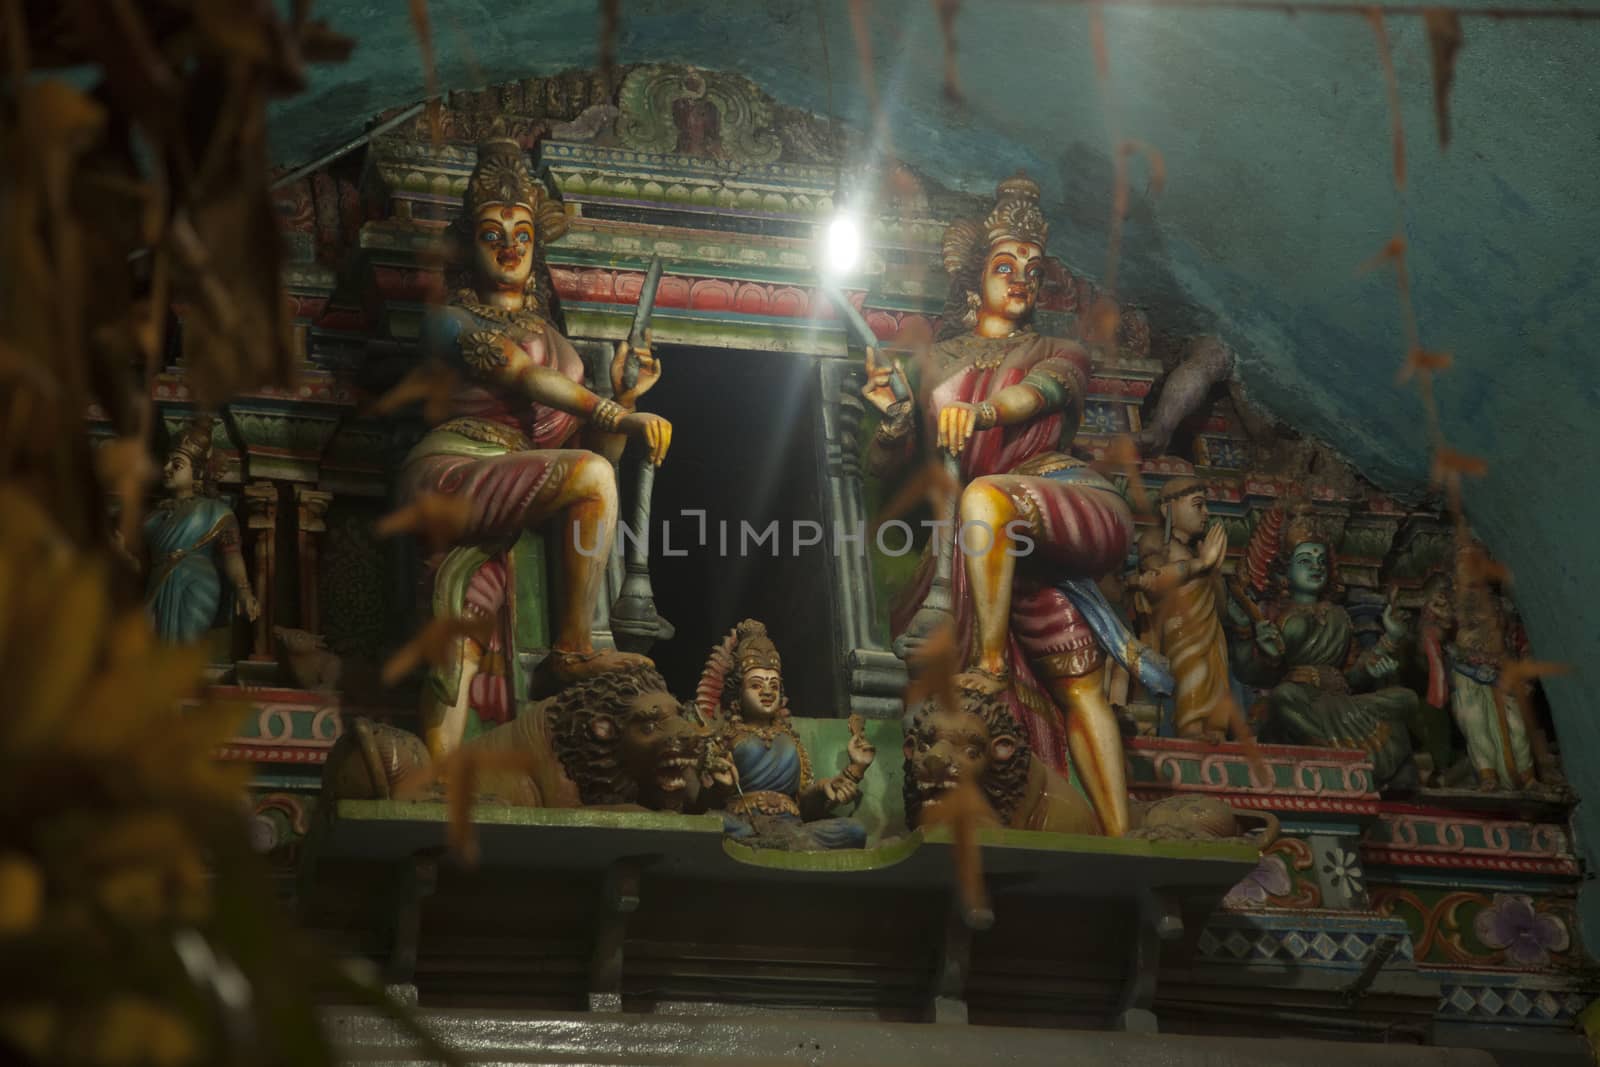 Inside of a Hindu temple by Aarstudio